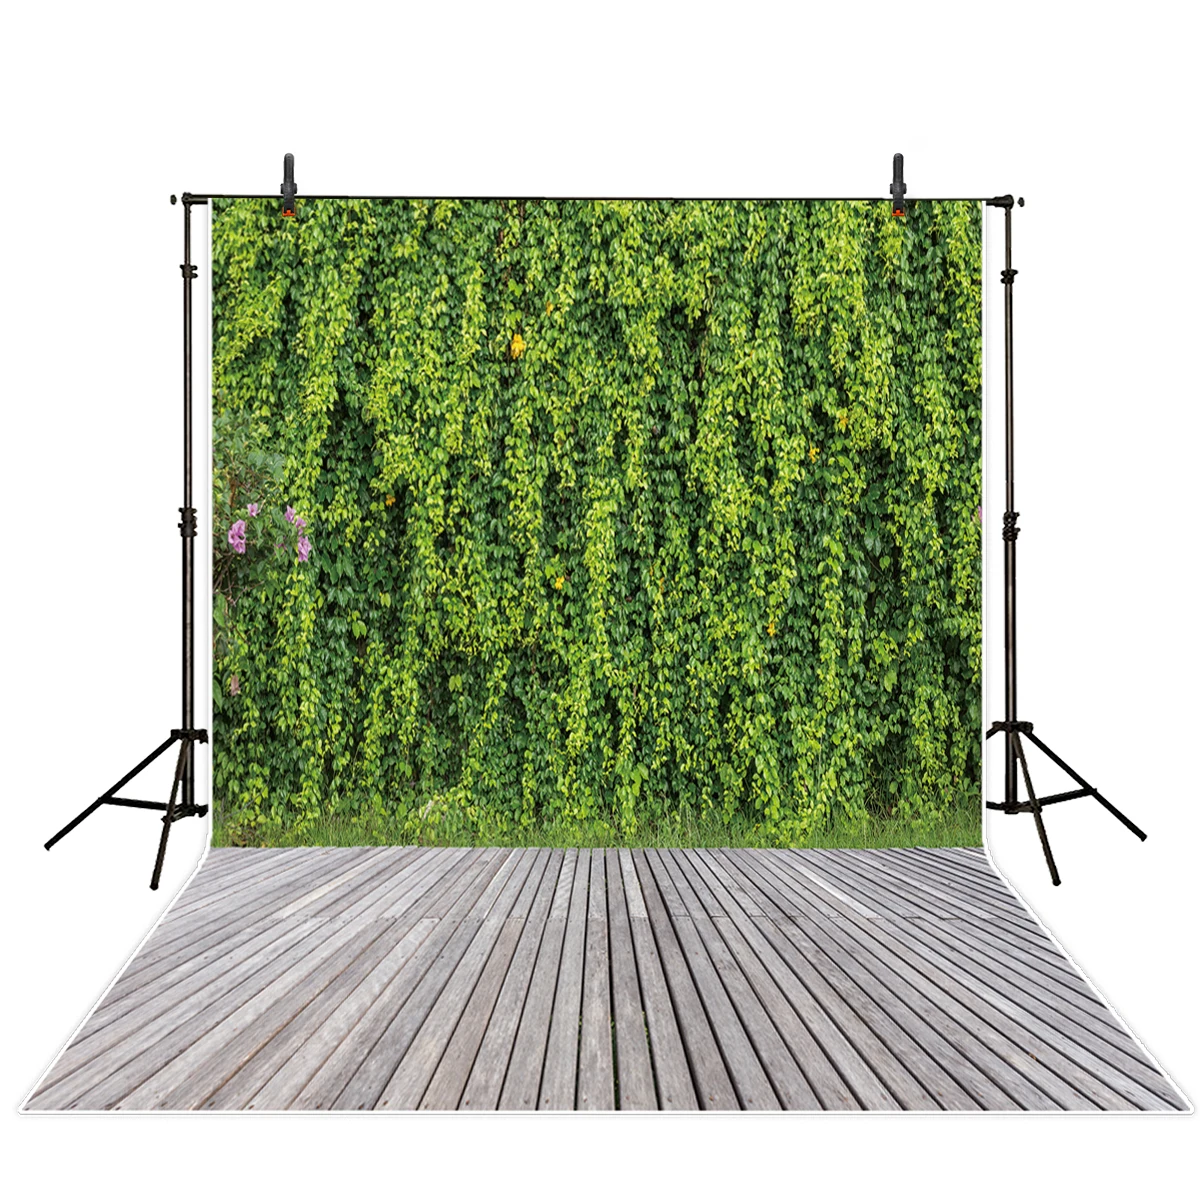 Allenjoy fotografie pozadie jarnej zelenej rastlinnej steny sivé drevené podlahy, staré záhrady fotografie studio rekvizity fotograf vinyl